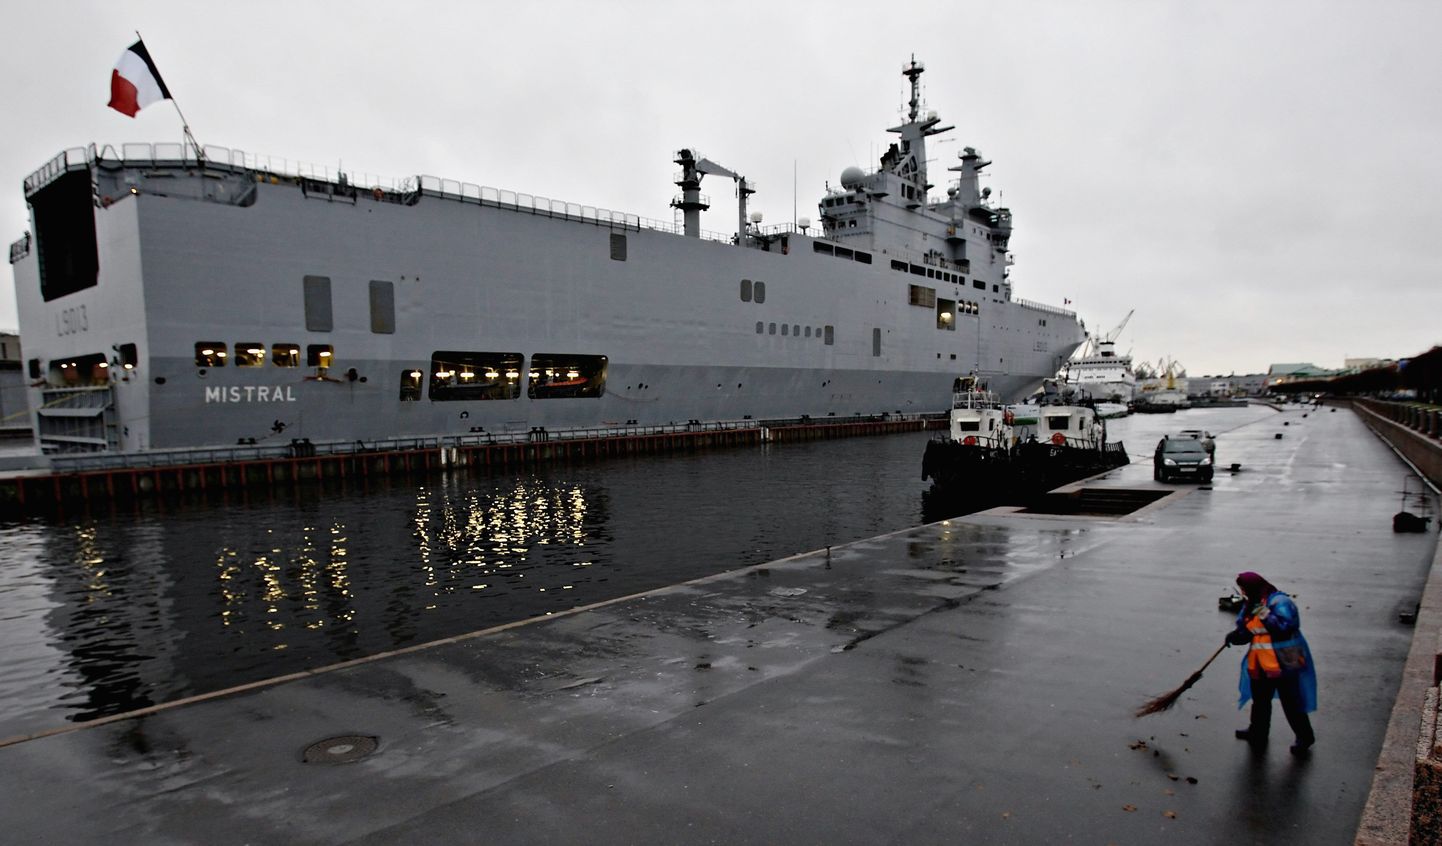 Prantsuse Mistral-klassi laev möödunud nädalal Peterburis.